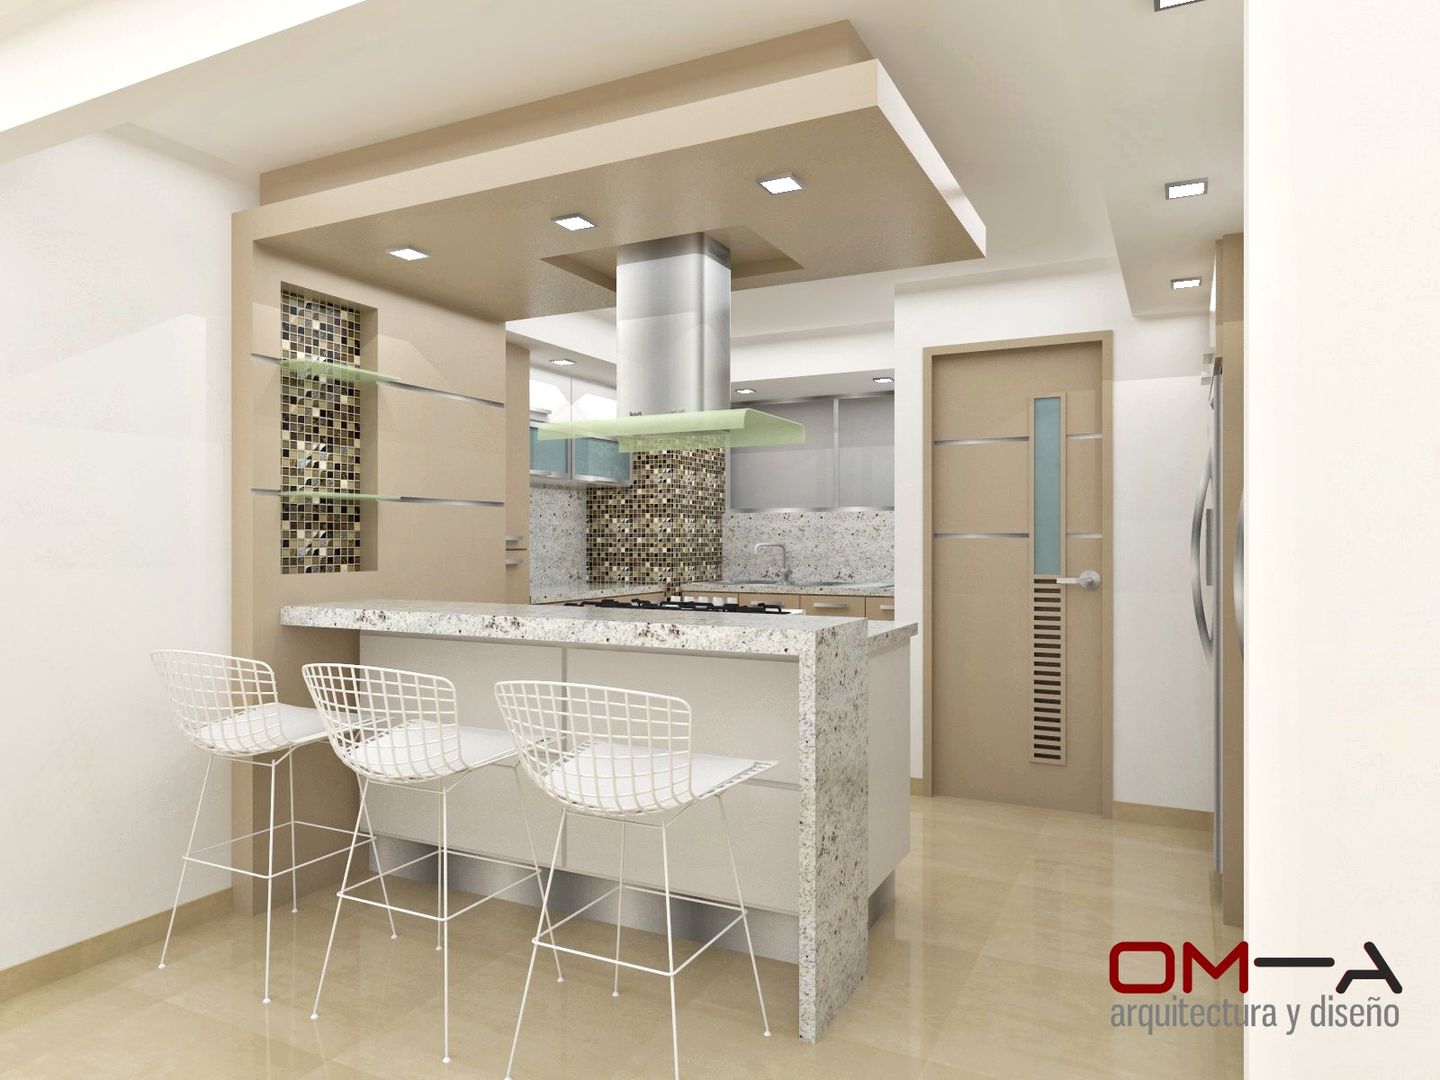 Diseño de cocina, om-a arquitectura y diseño om-a arquitectura y diseño 廚房